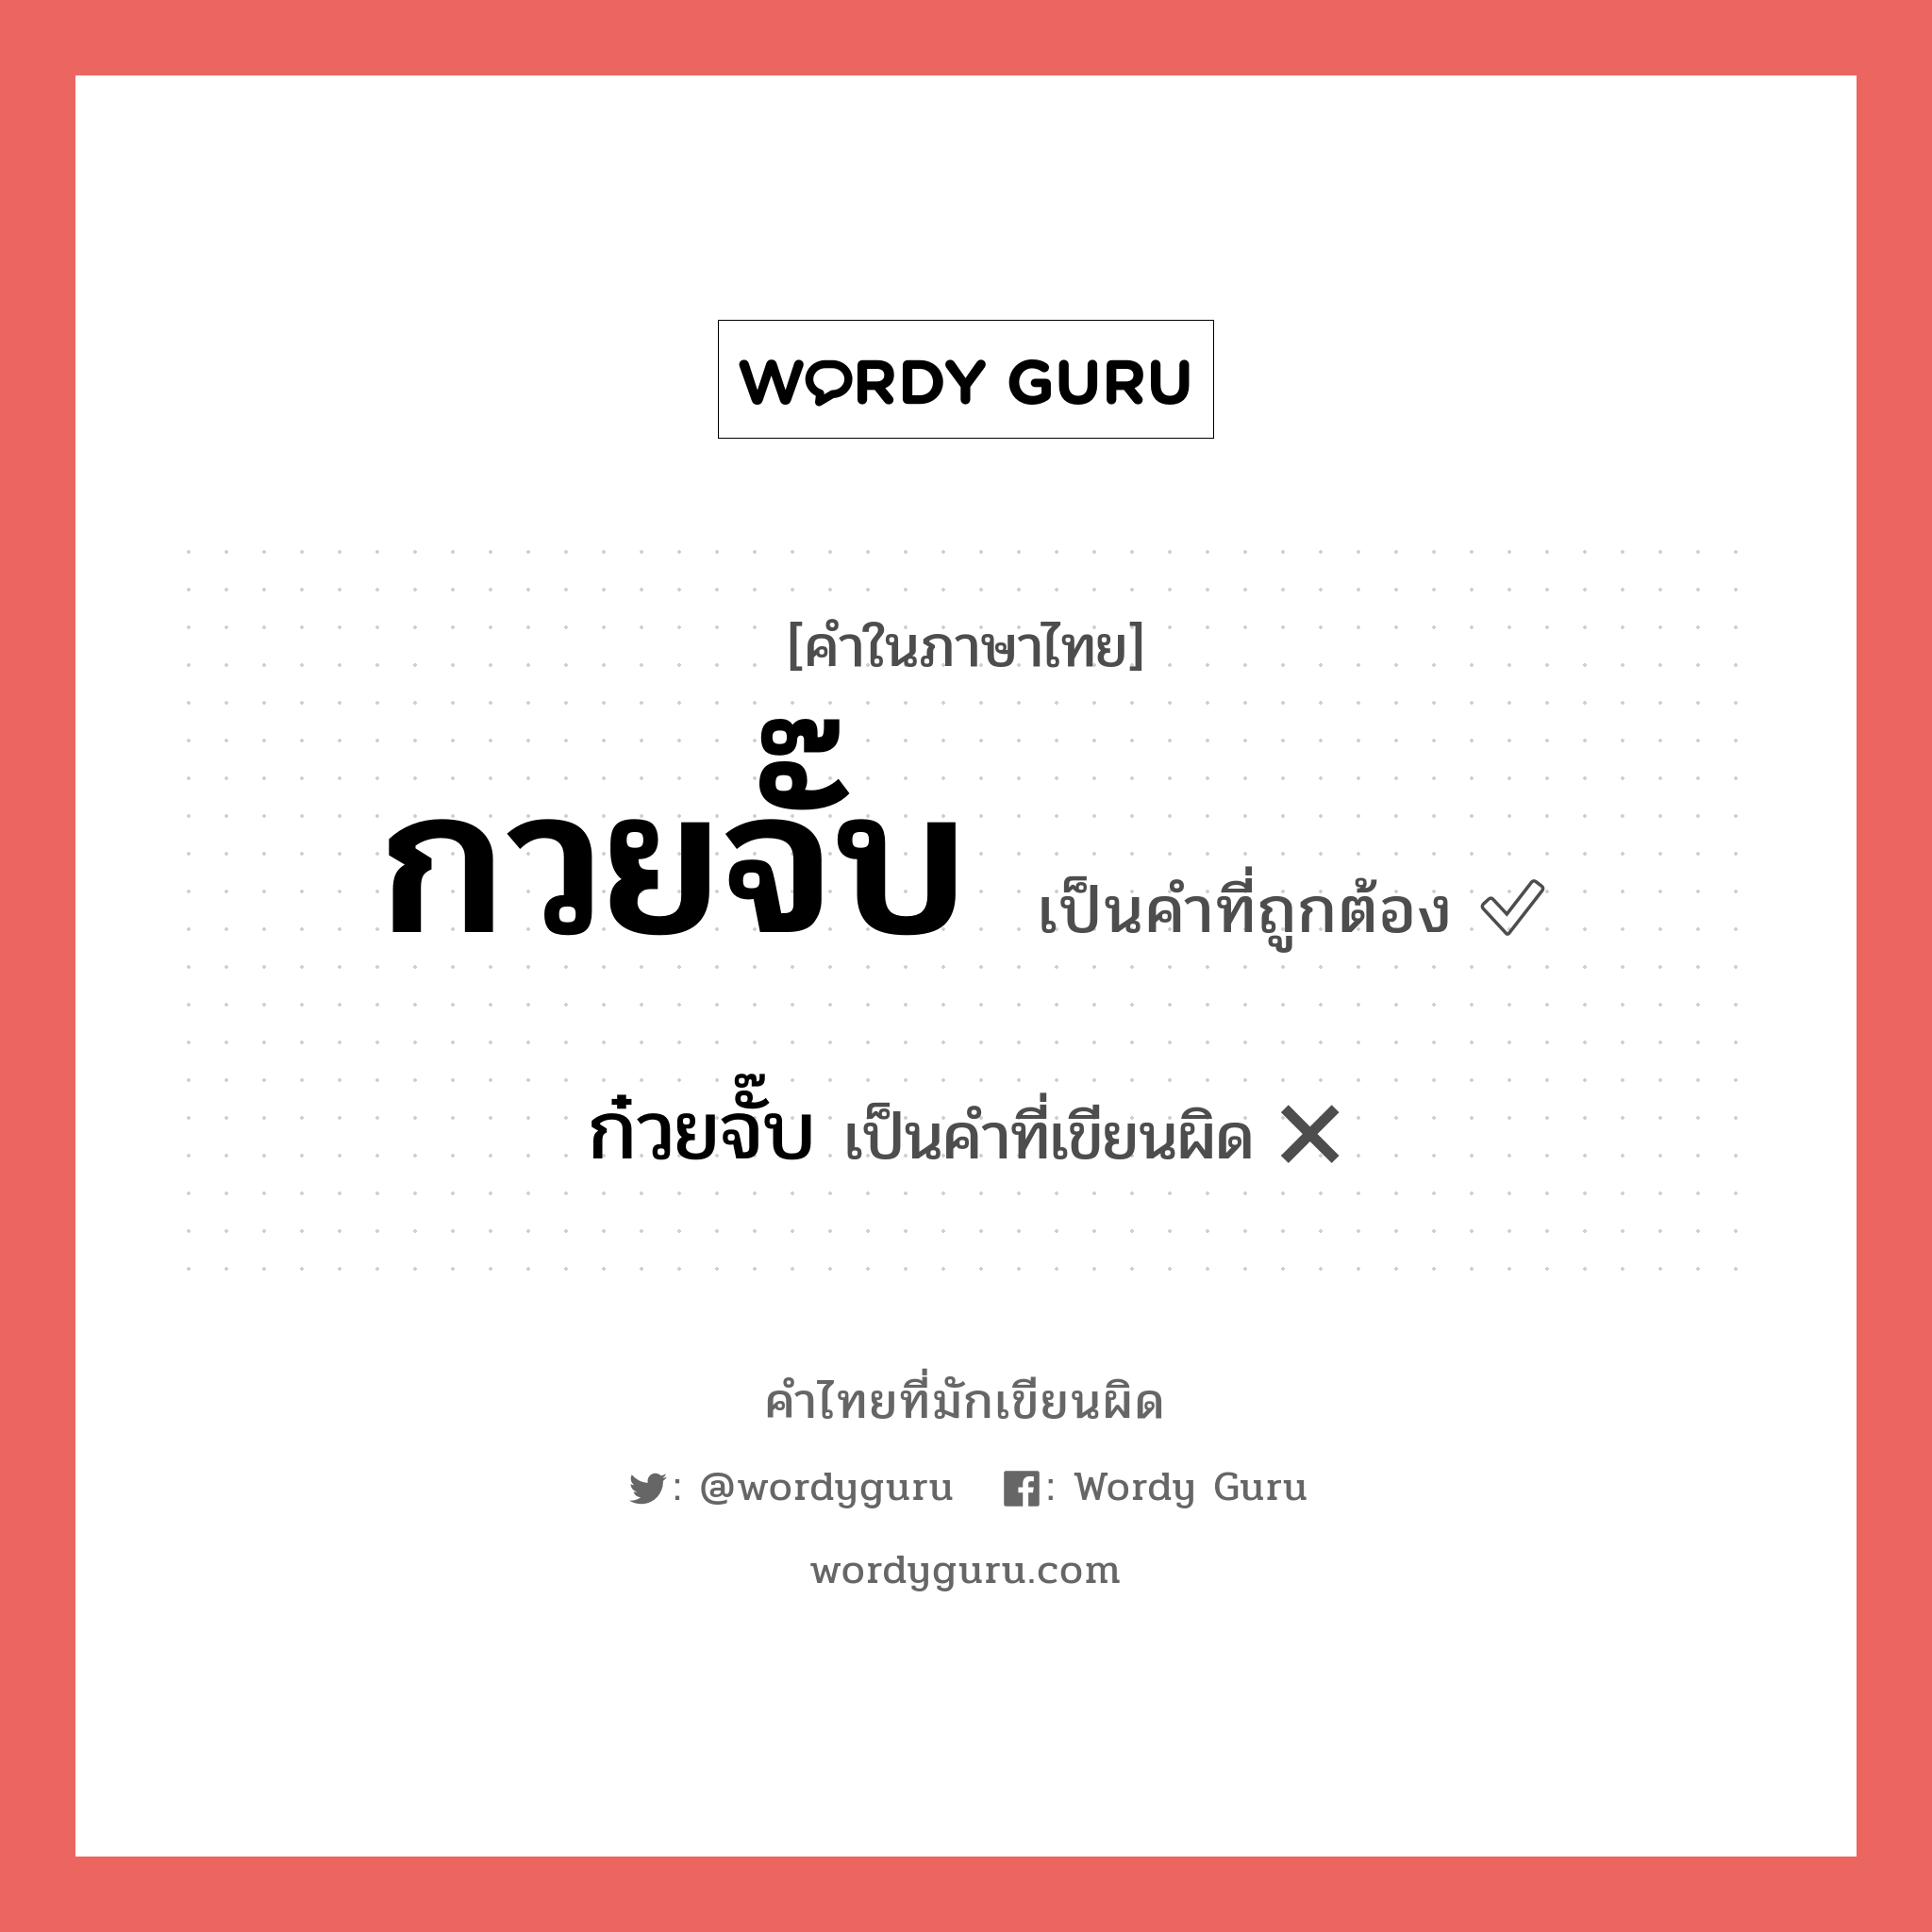 กวยจั๊บ หรือ ก๋วยจั๊บ คำไหนเขียนถูก?, คำในภาษาไทยที่มักเขียนผิด กวยจั๊บ คำที่ผิด ❌ ก๋วยจั๊บ